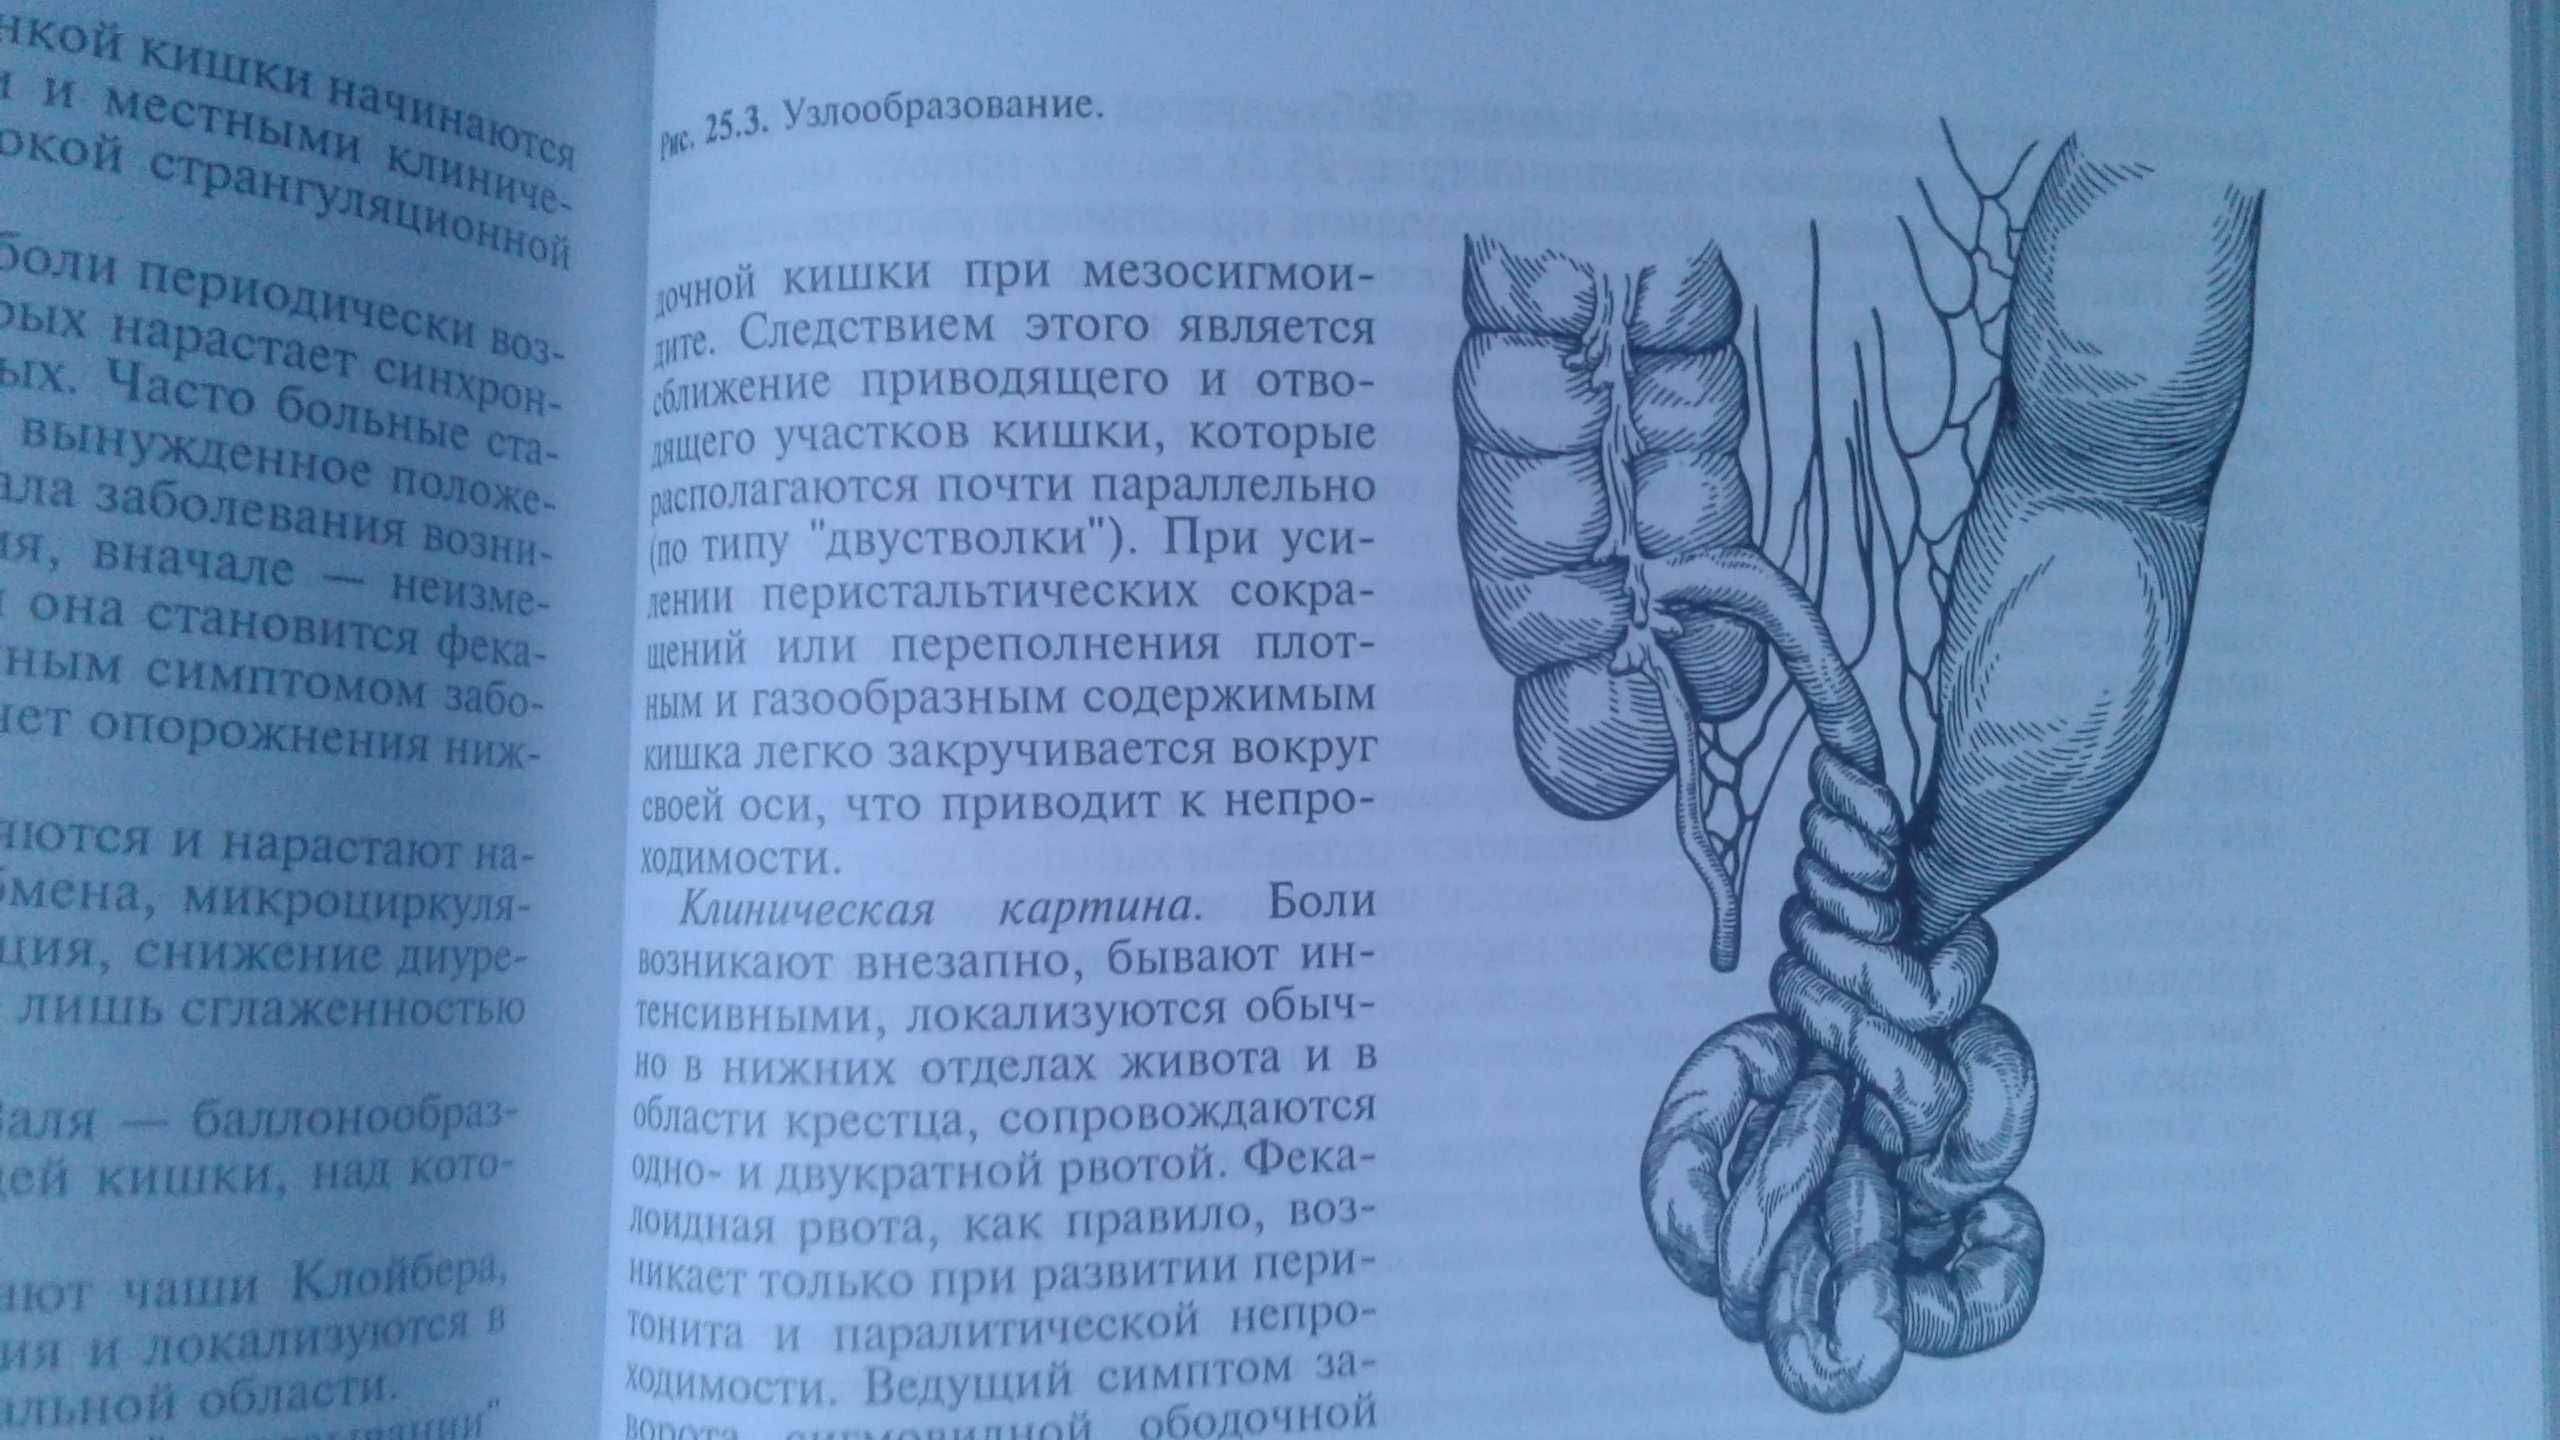 Хирургические болезни Кузин 2005 год учебник медуниверситетов